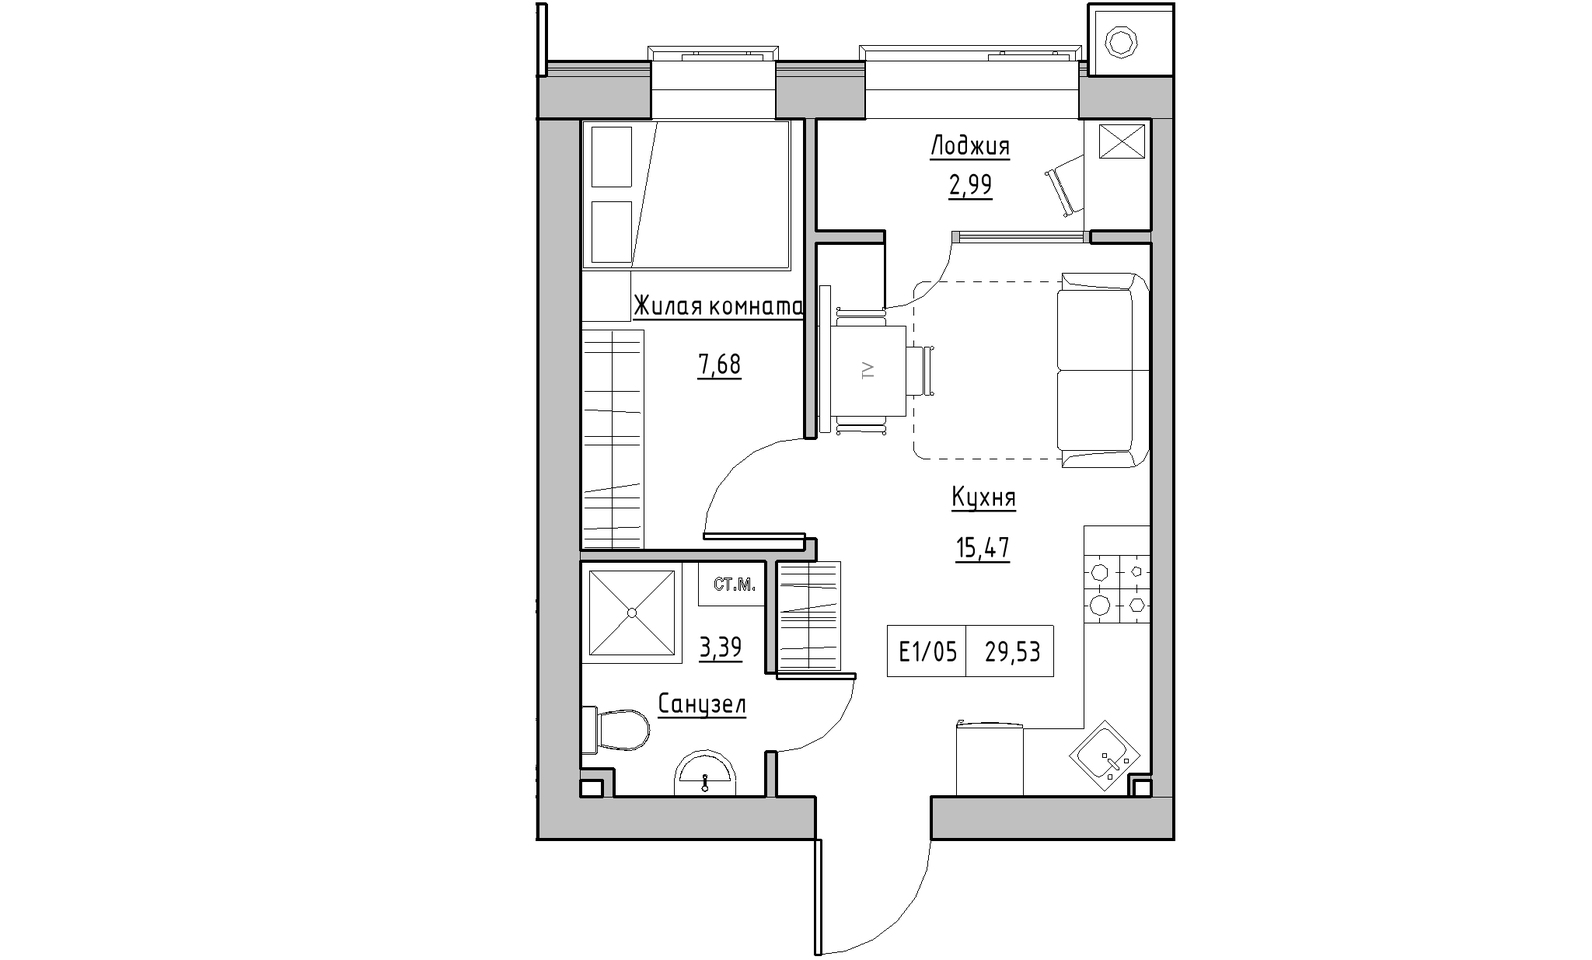 Планування 1-к квартира площею 29.53м2, KS-014-02/0006.